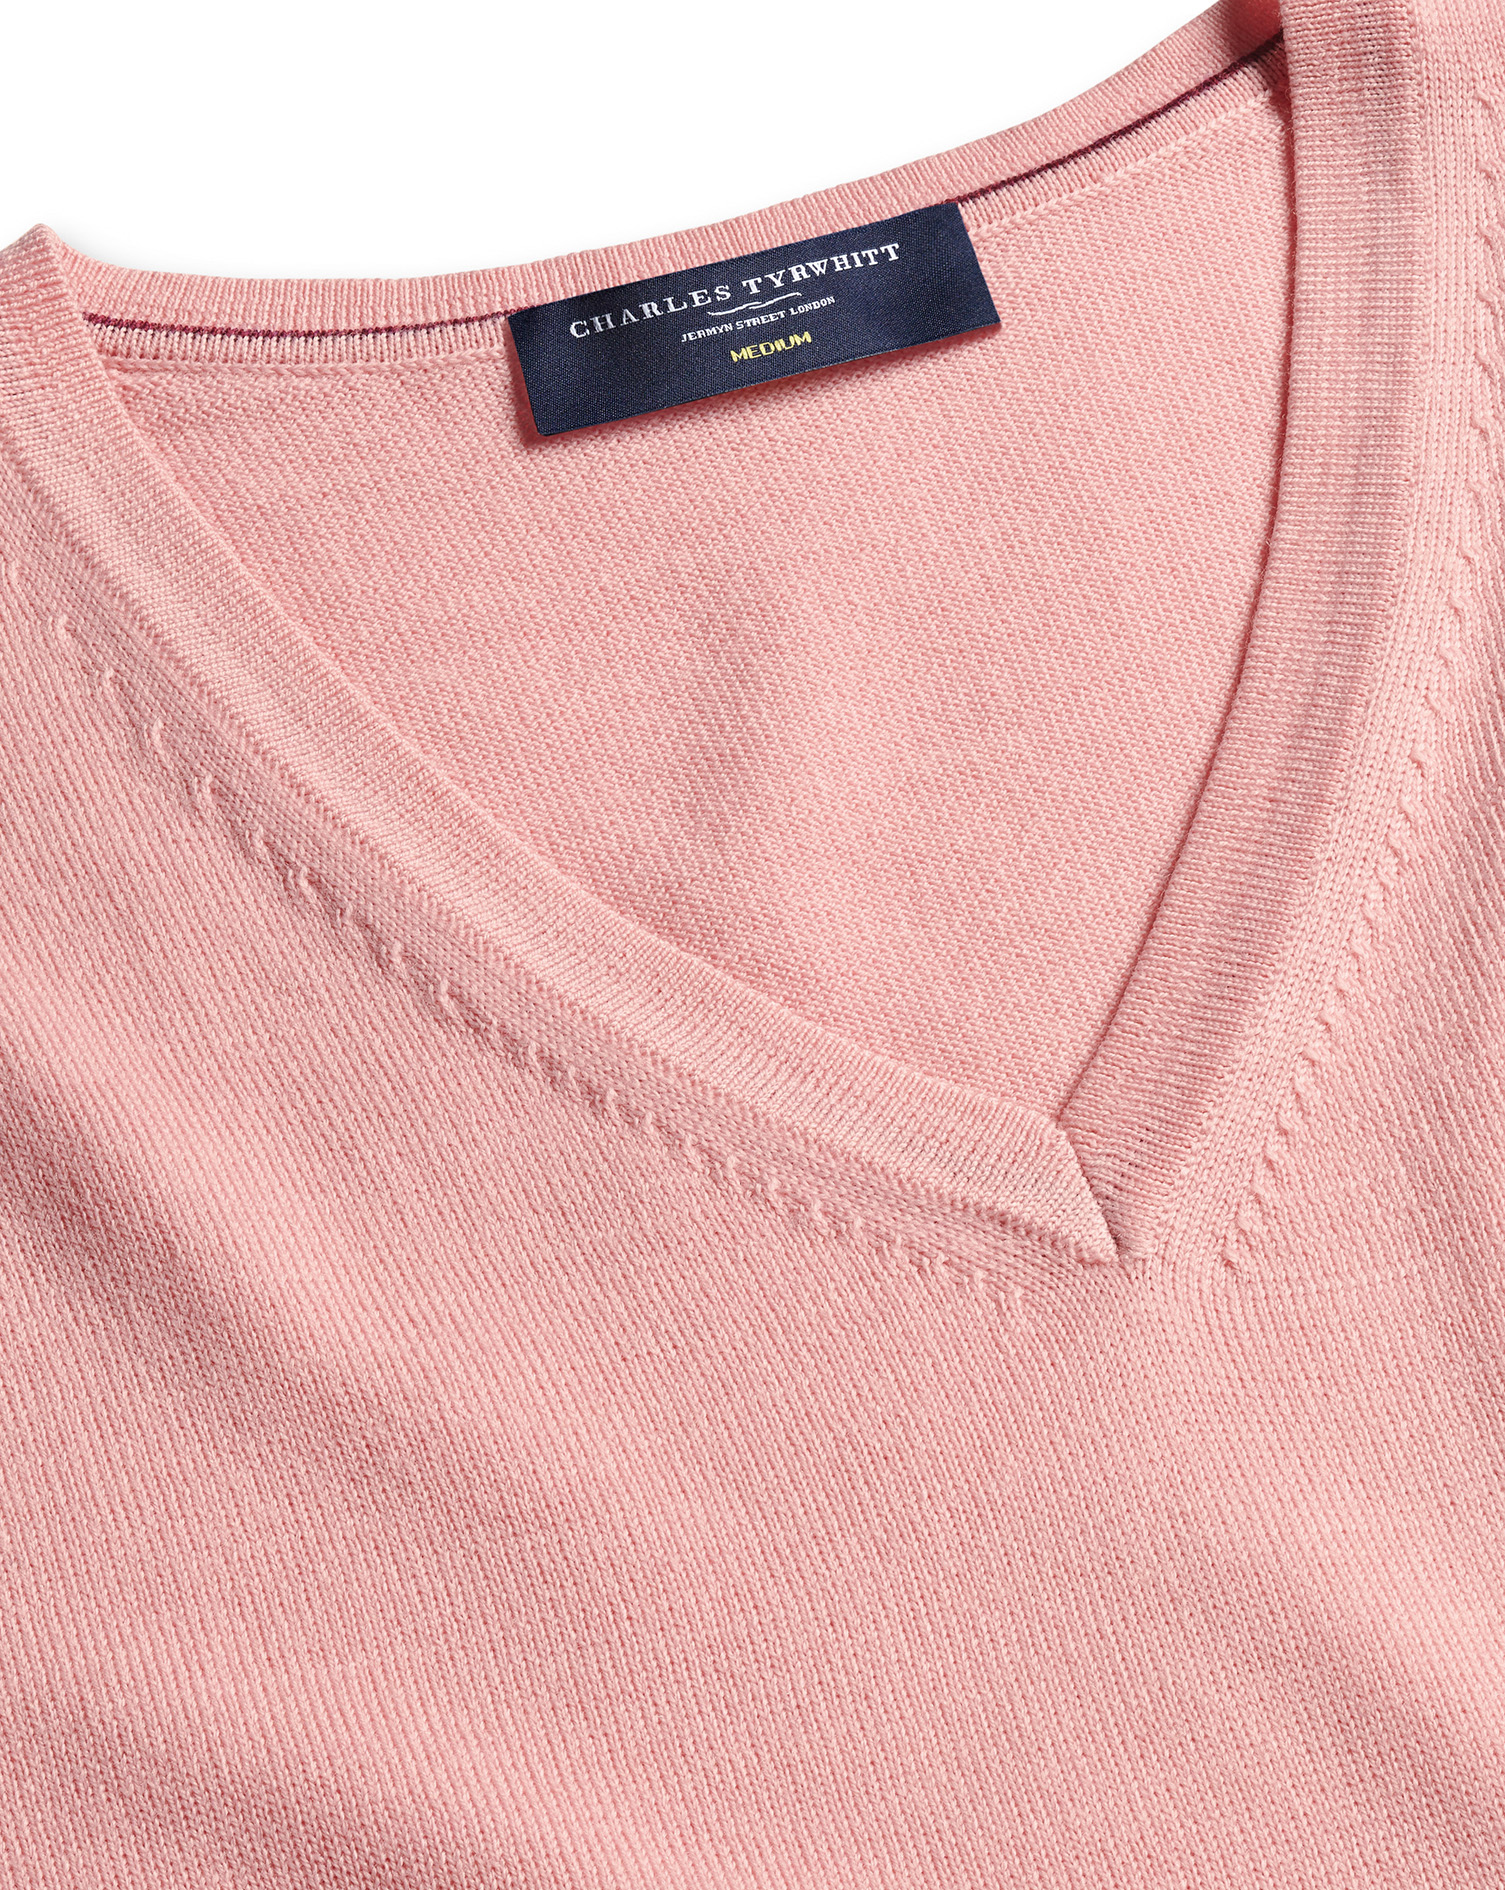 Charles Tyrwhitt Pure Merino V Neck Wool Sweater In Pink